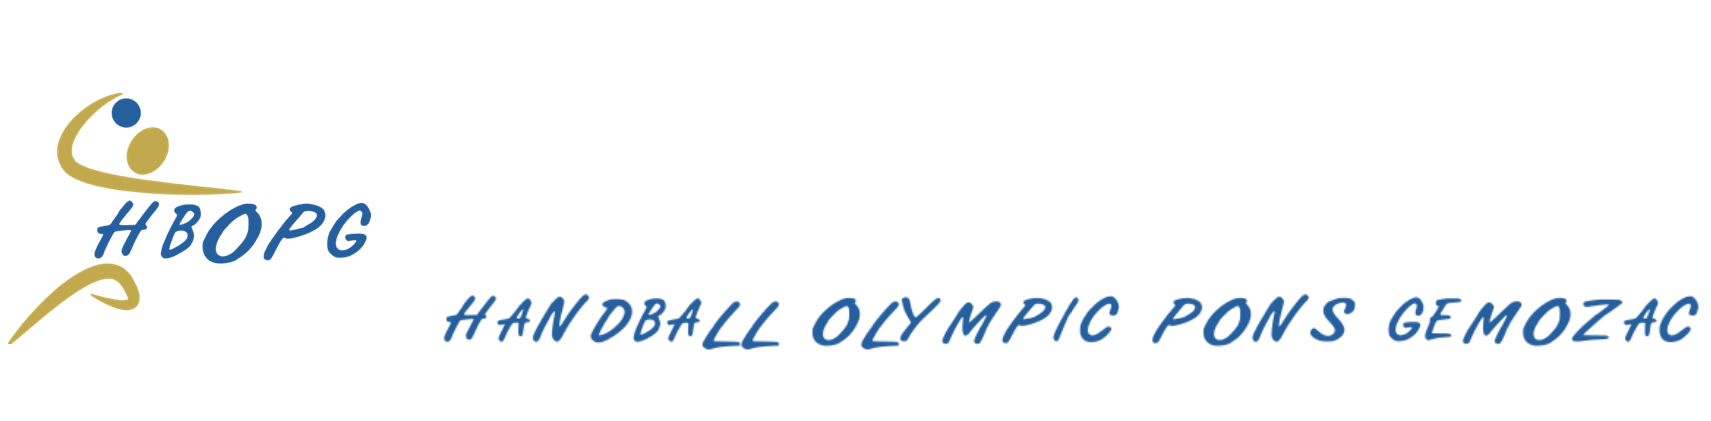 Hand-ball Olympic Pons-Gémozac